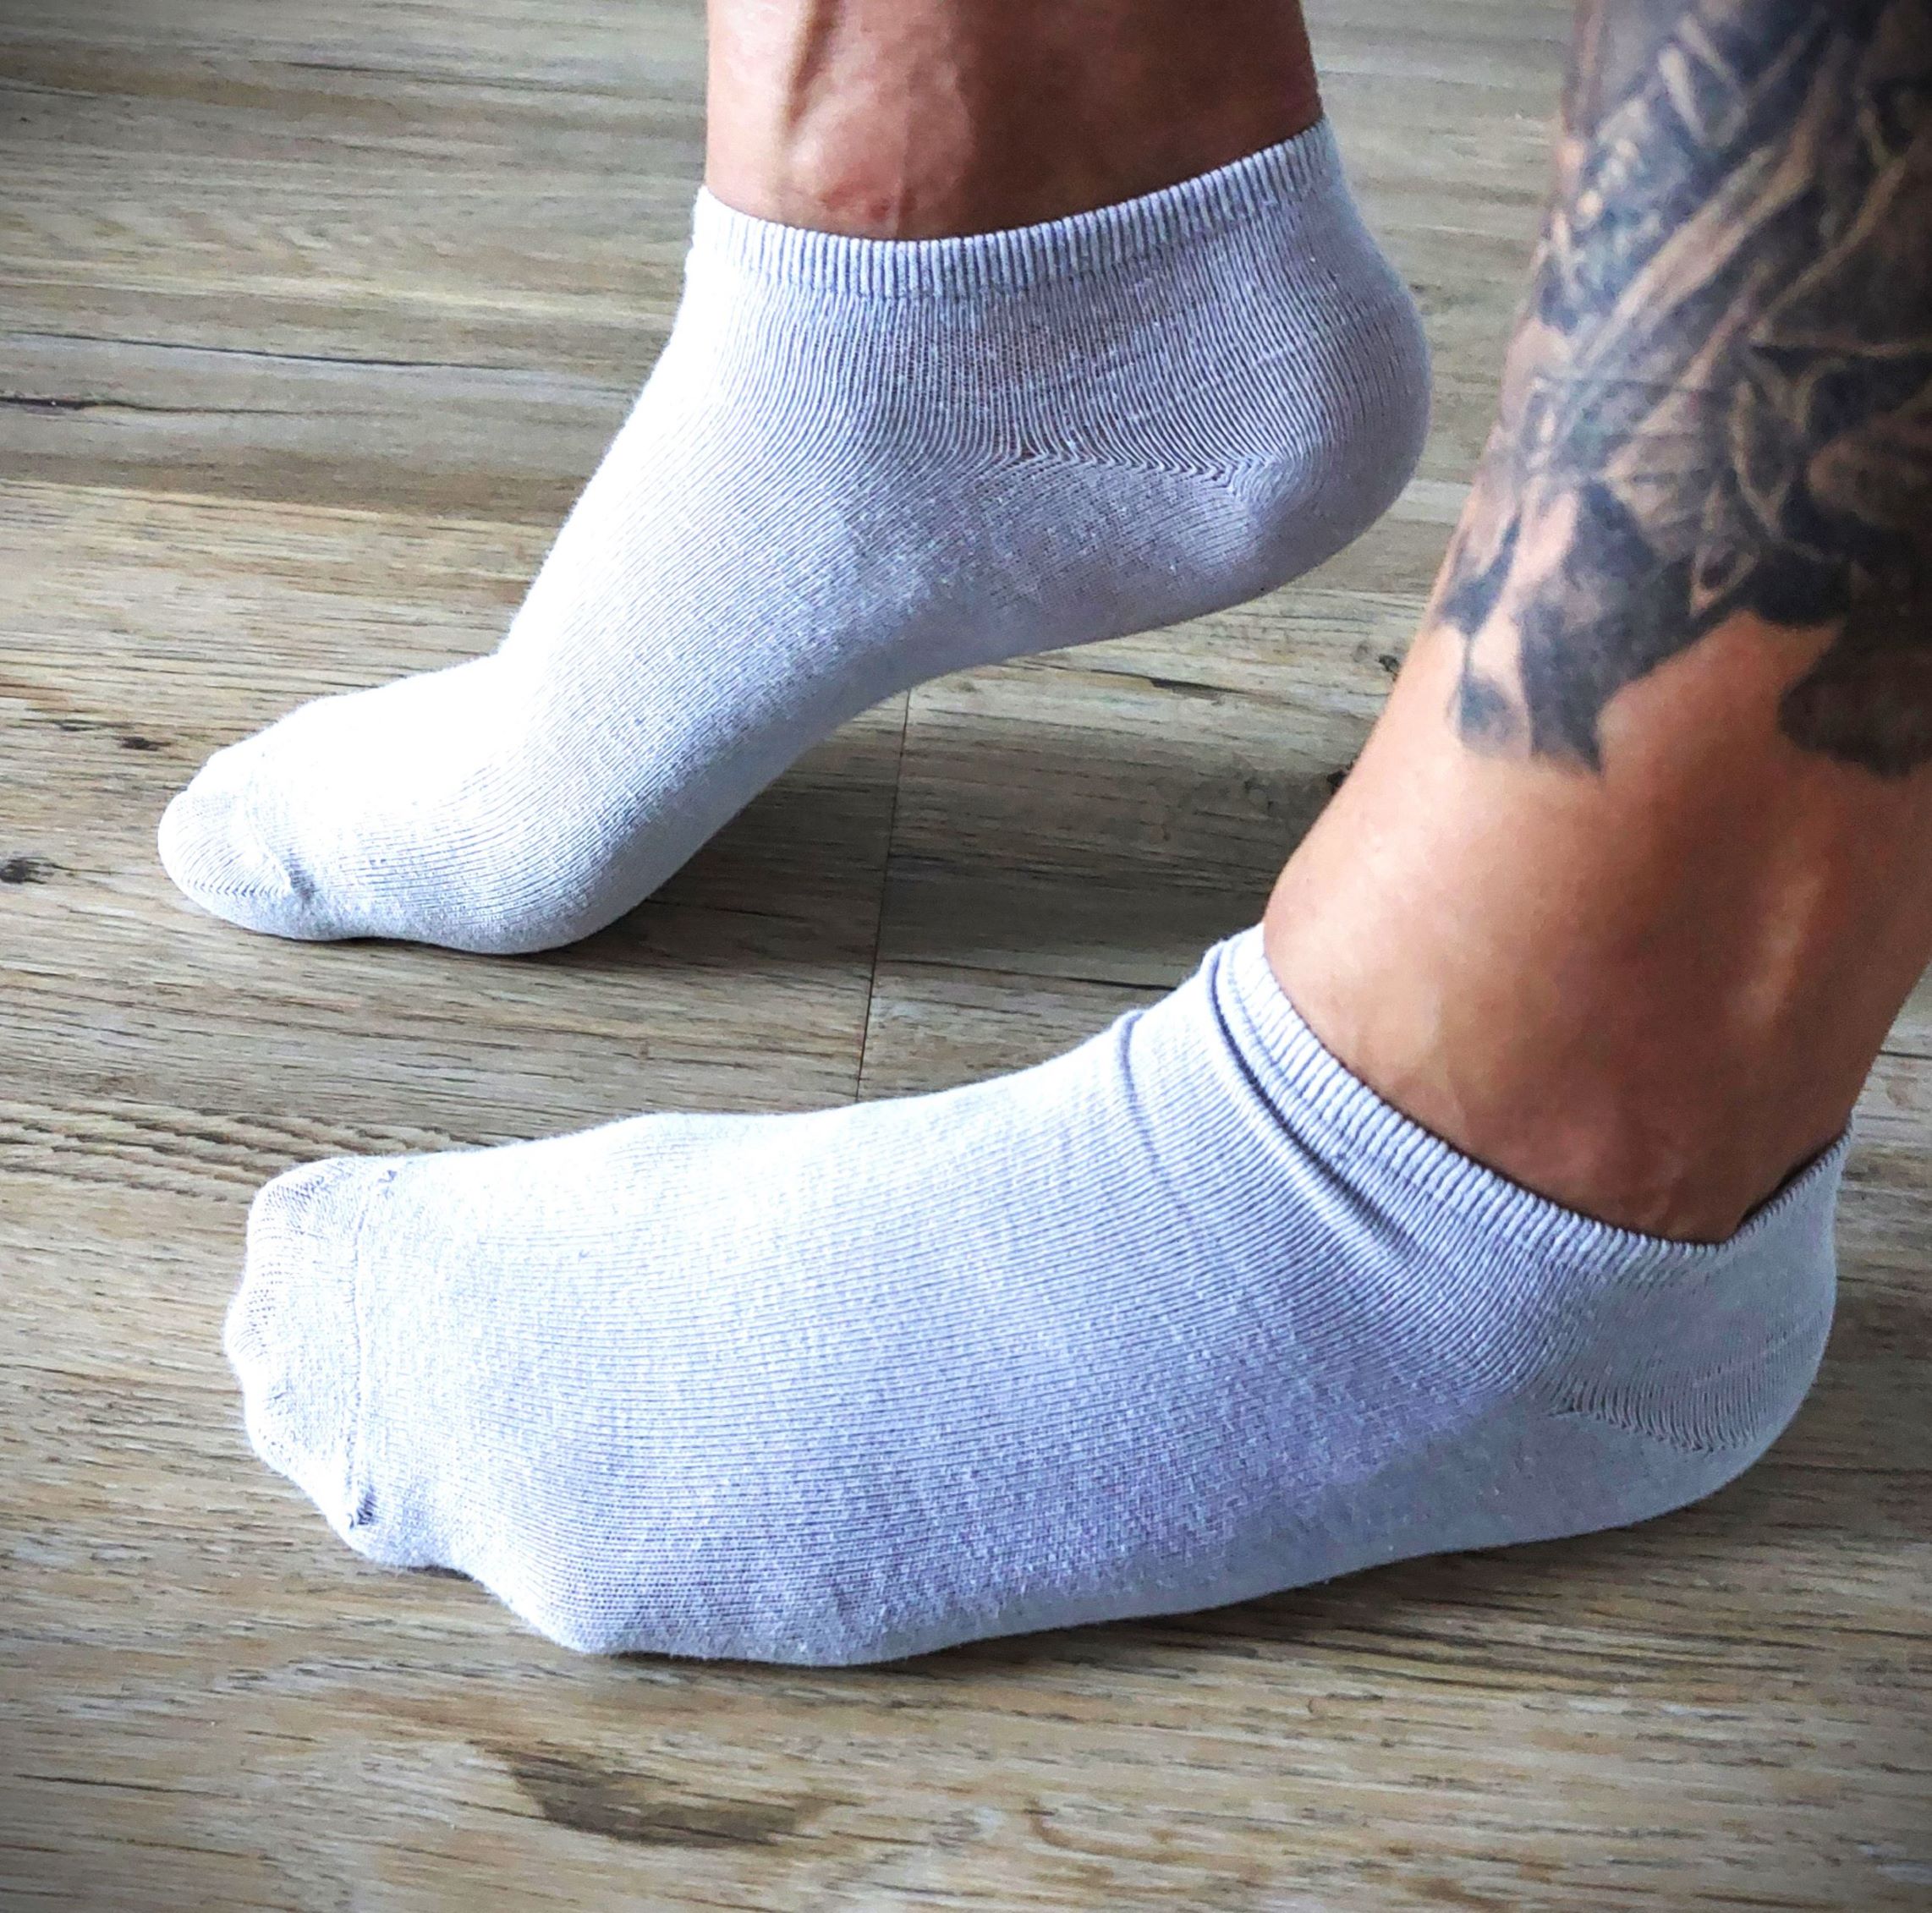 All-Day Socken weiß, häufig getragen